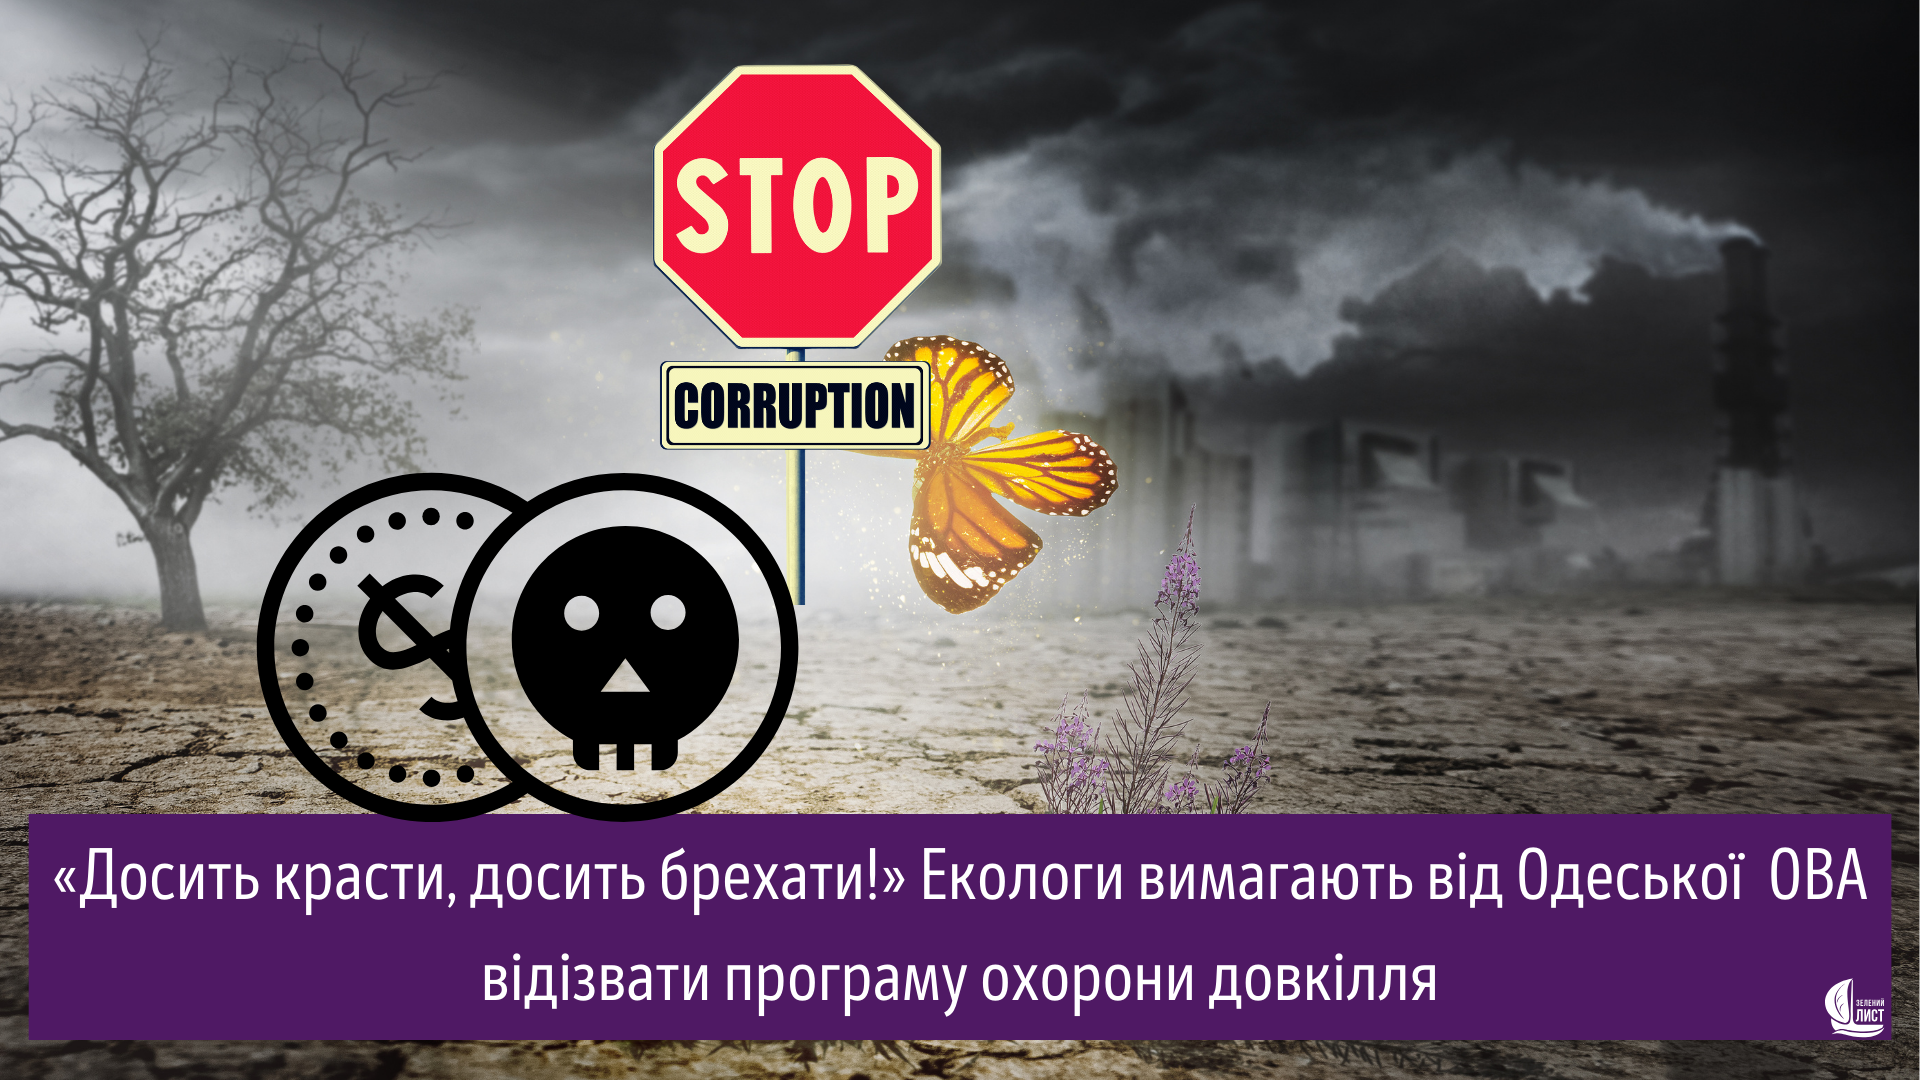 «Досить красти, досить брехати!» Екологи вимагають від Одеської ОВА відізвати програму охорони довкілля